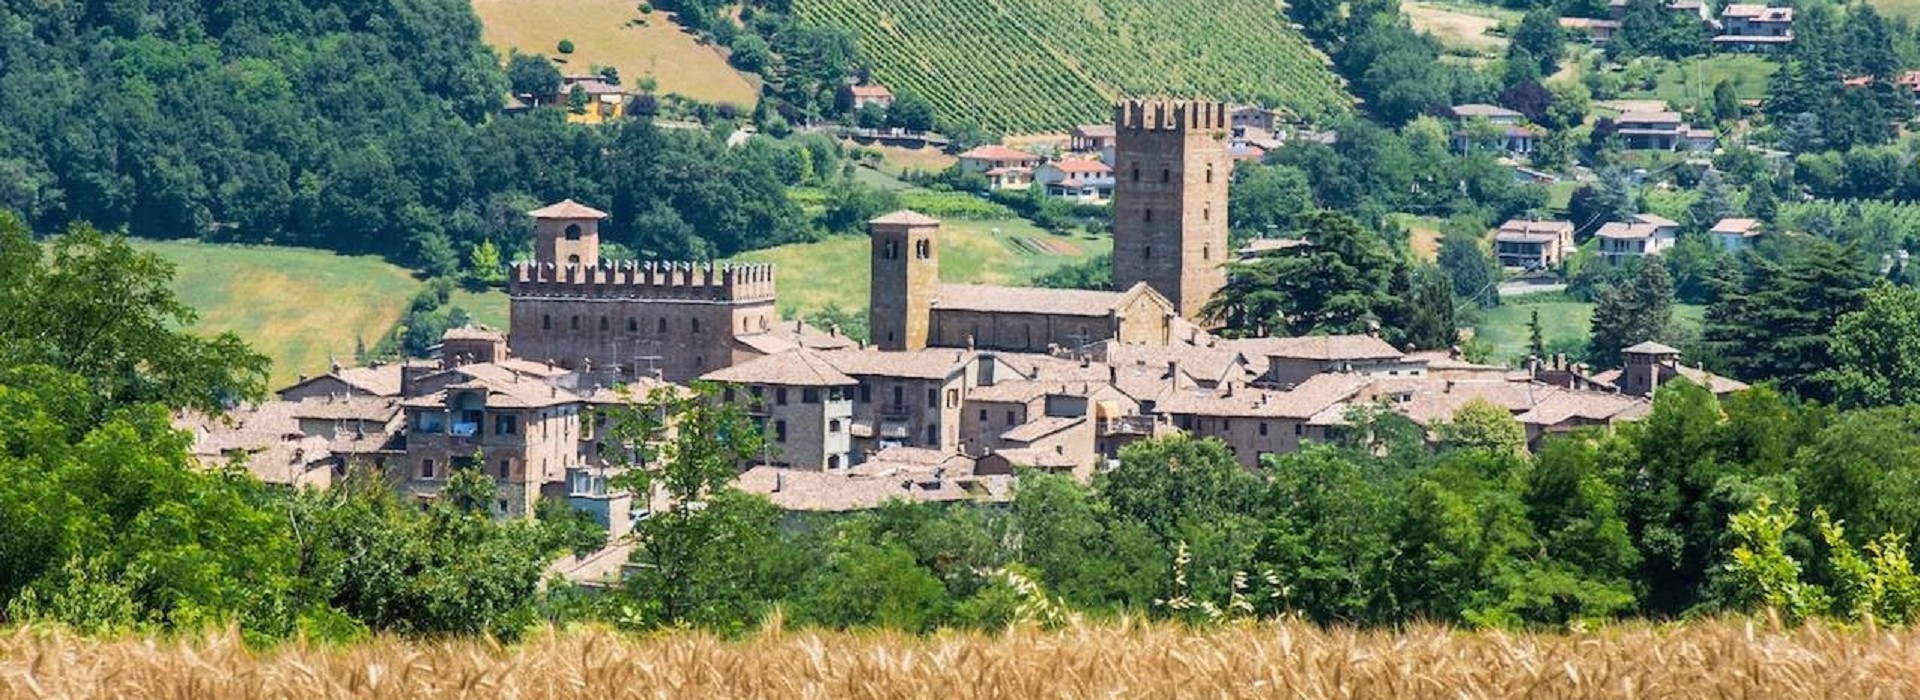 Castelli di Piacenza